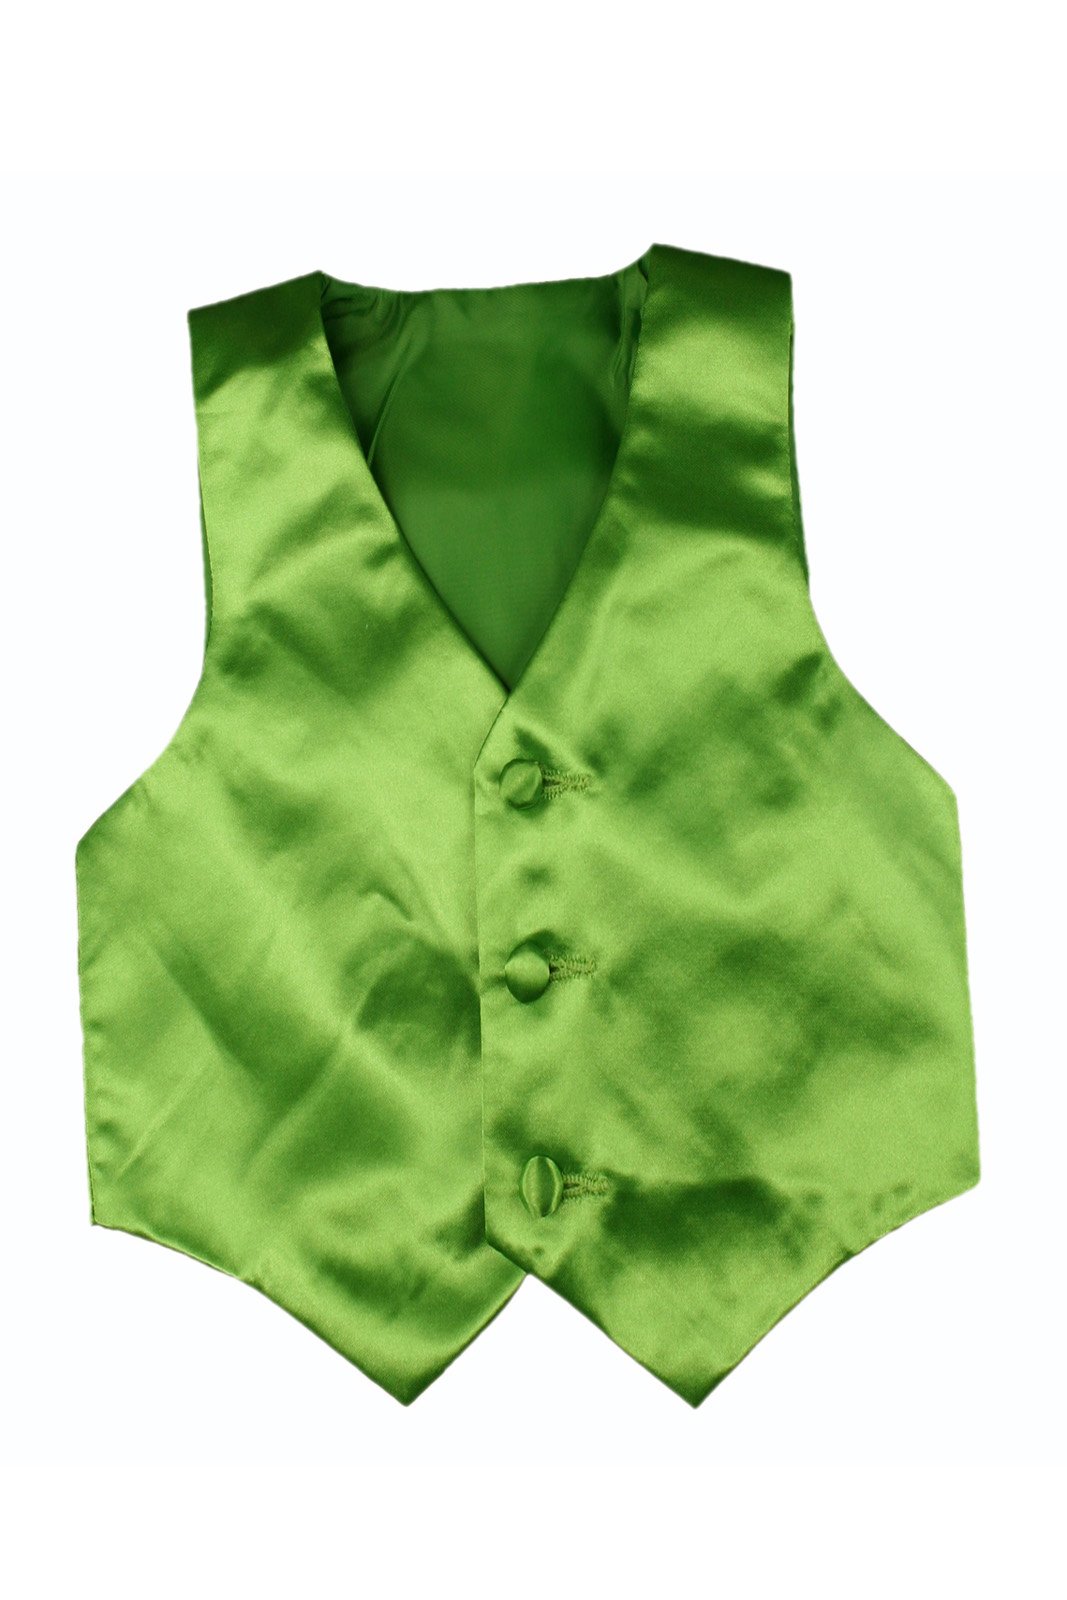 Baby Toddler Kids Little Boys Formal 23 Color Satin Vest S-7 (2T, Lime Green)